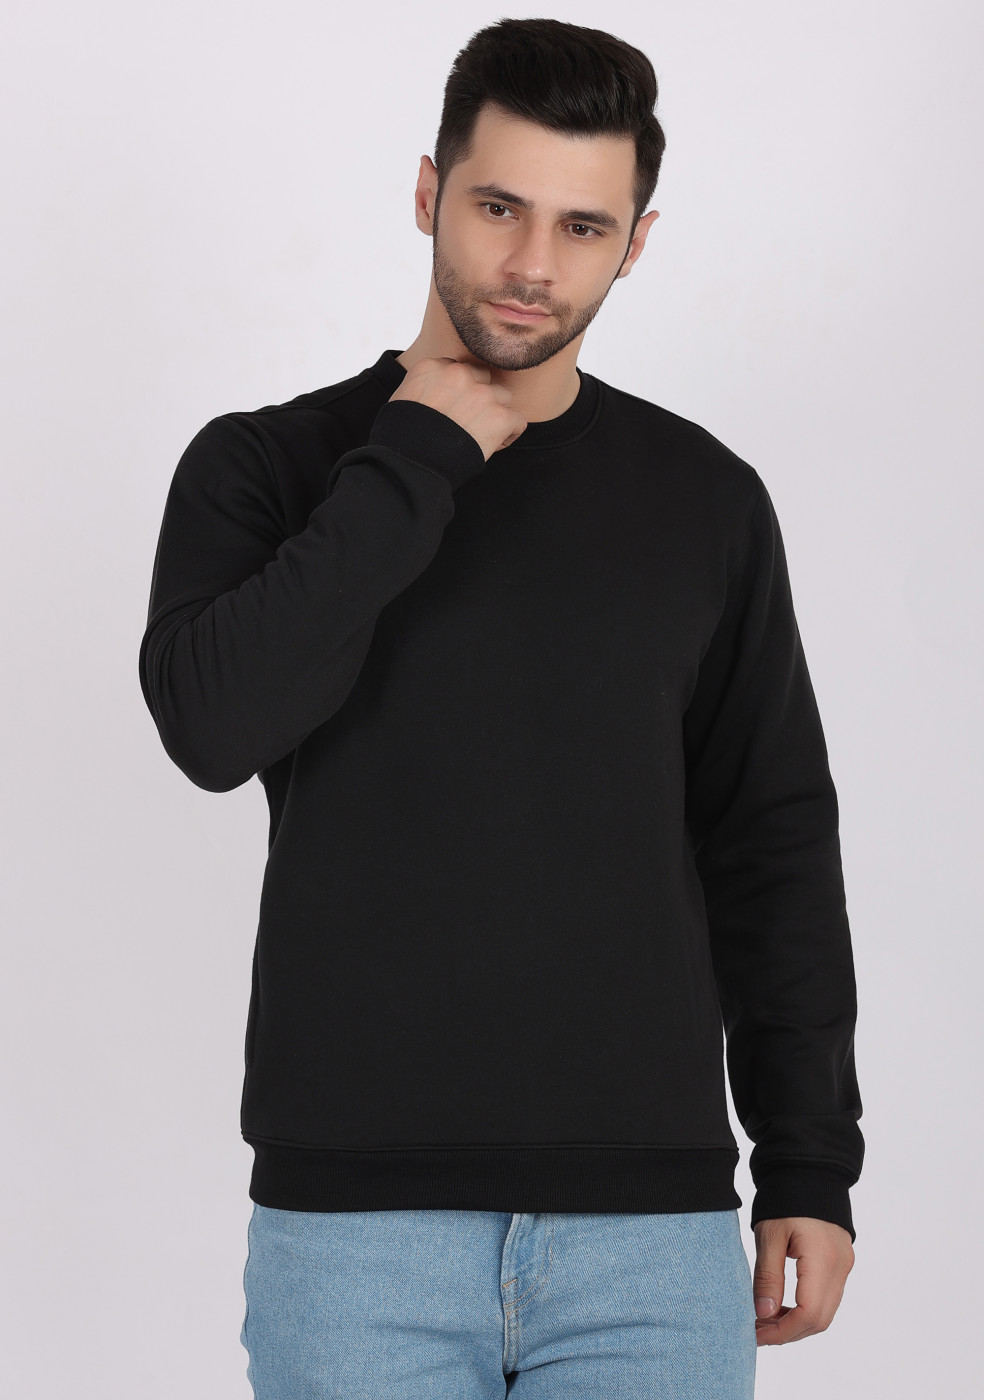 HUKH Black Color Sweatshirt For Men